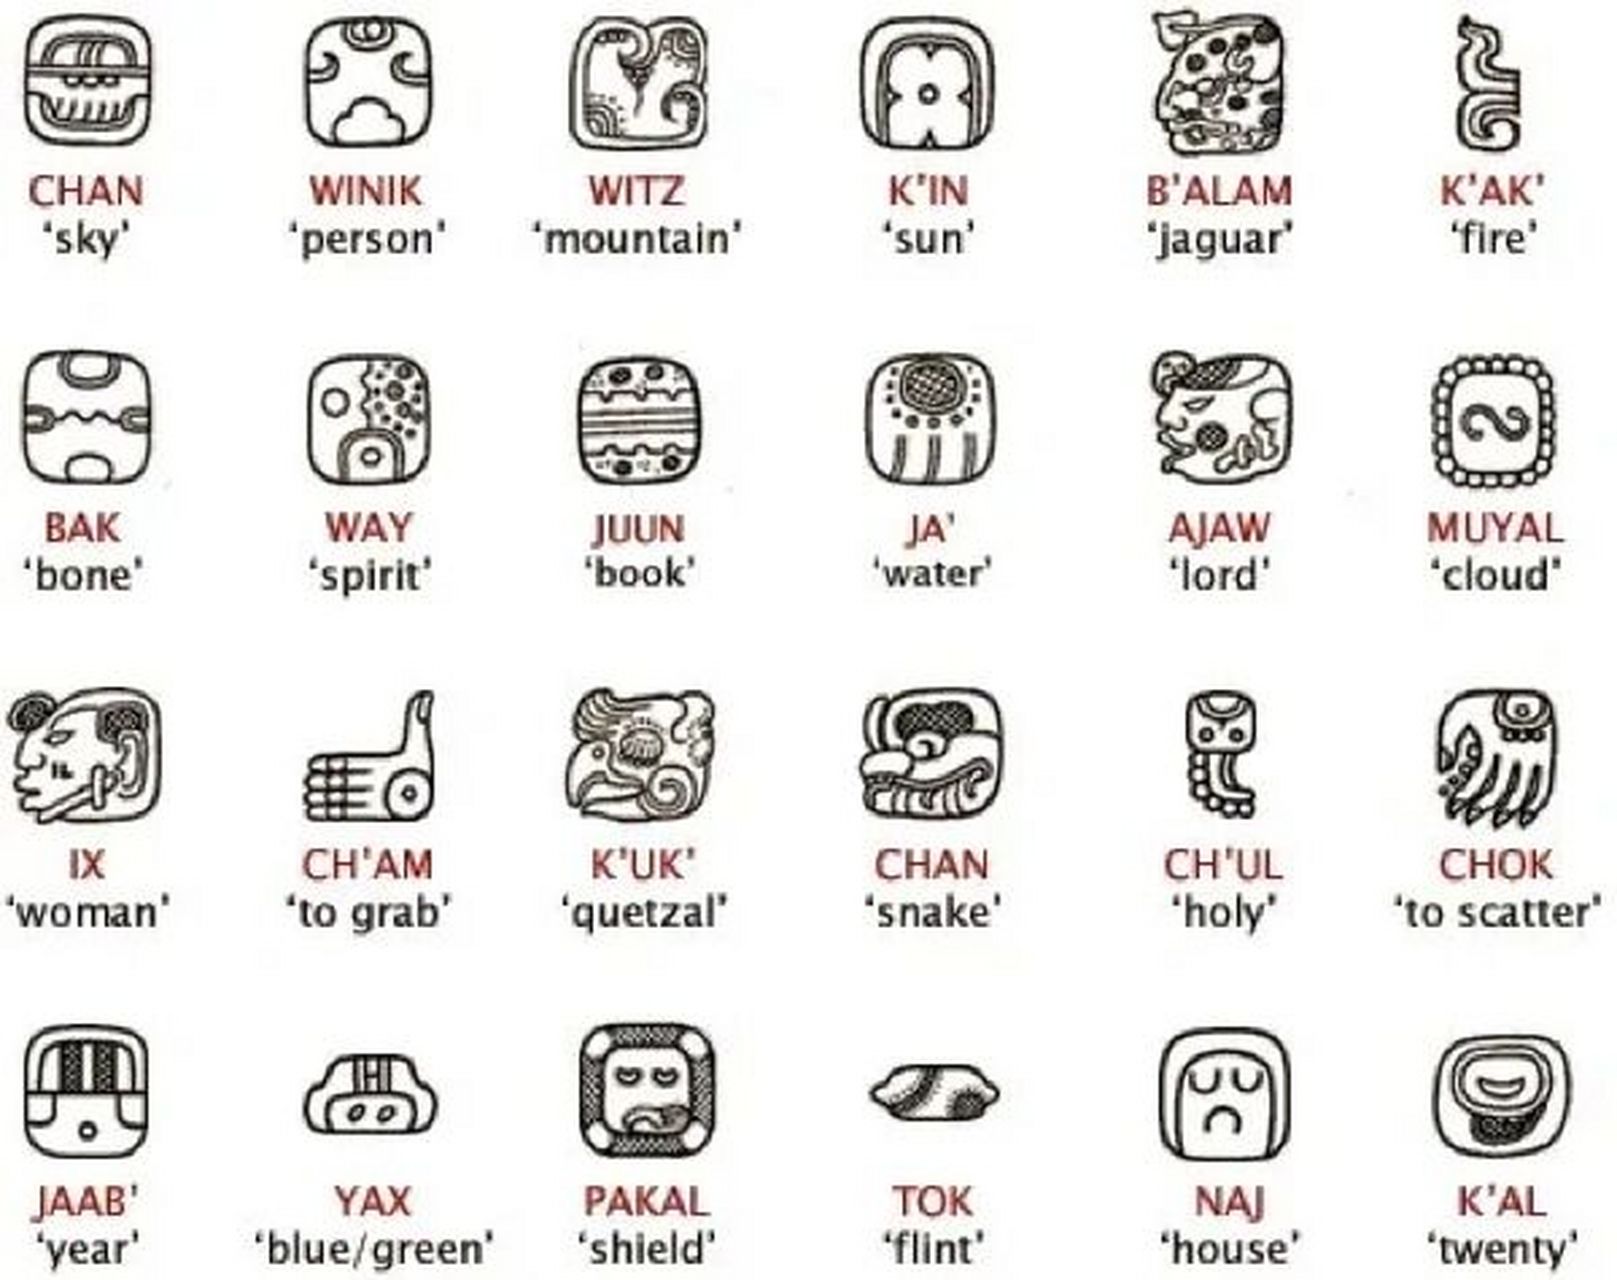 人类神秘文明的结晶—玛雅符号密码 玛雅文字是美洲玛雅人在公元